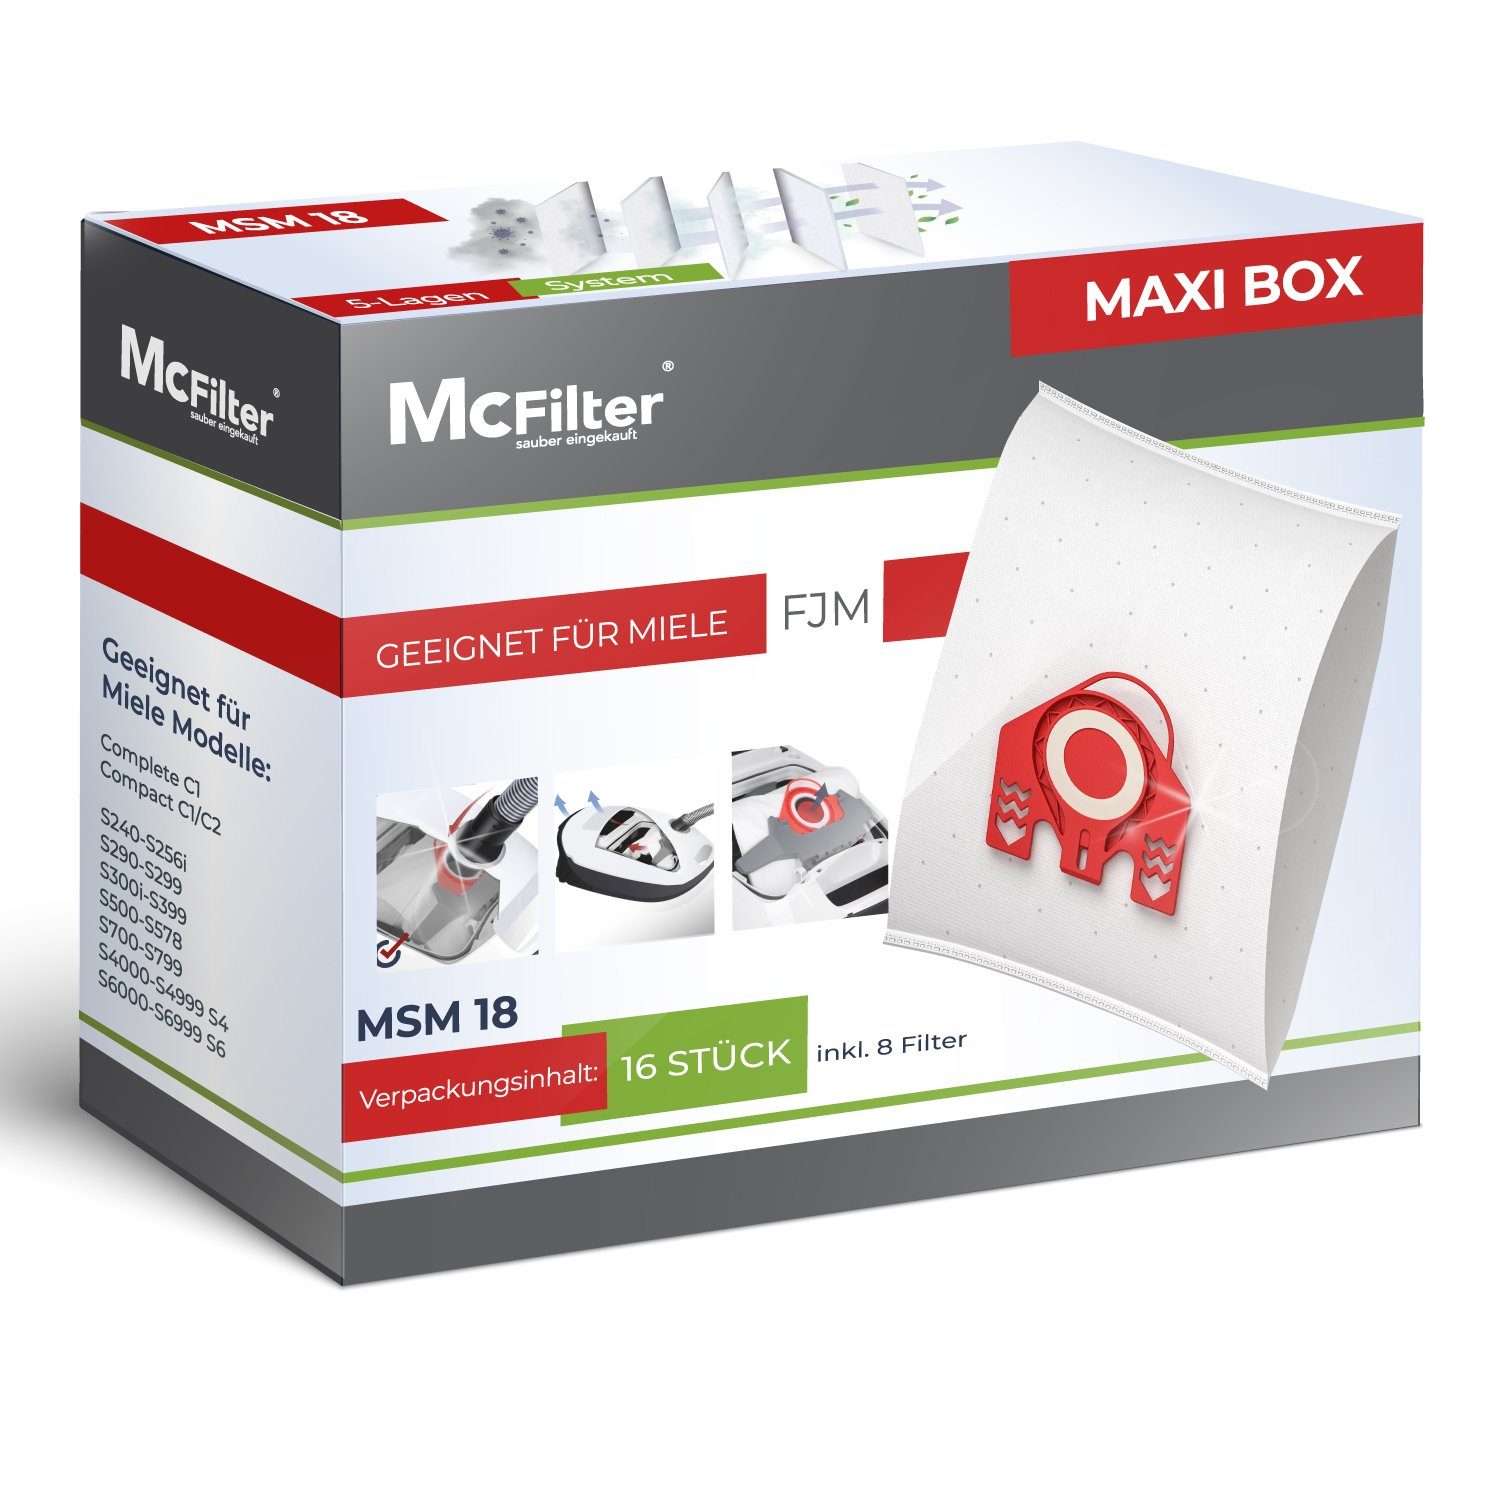 McFilter Staubsaugerbeutel MAXI BOX 16+8, passend für Miele Jazz Plus S371, S712-1 Staubsauger, inkl. 8 Filter, 16 St., Top Miele Alternative zu 9917710, wie 10408420